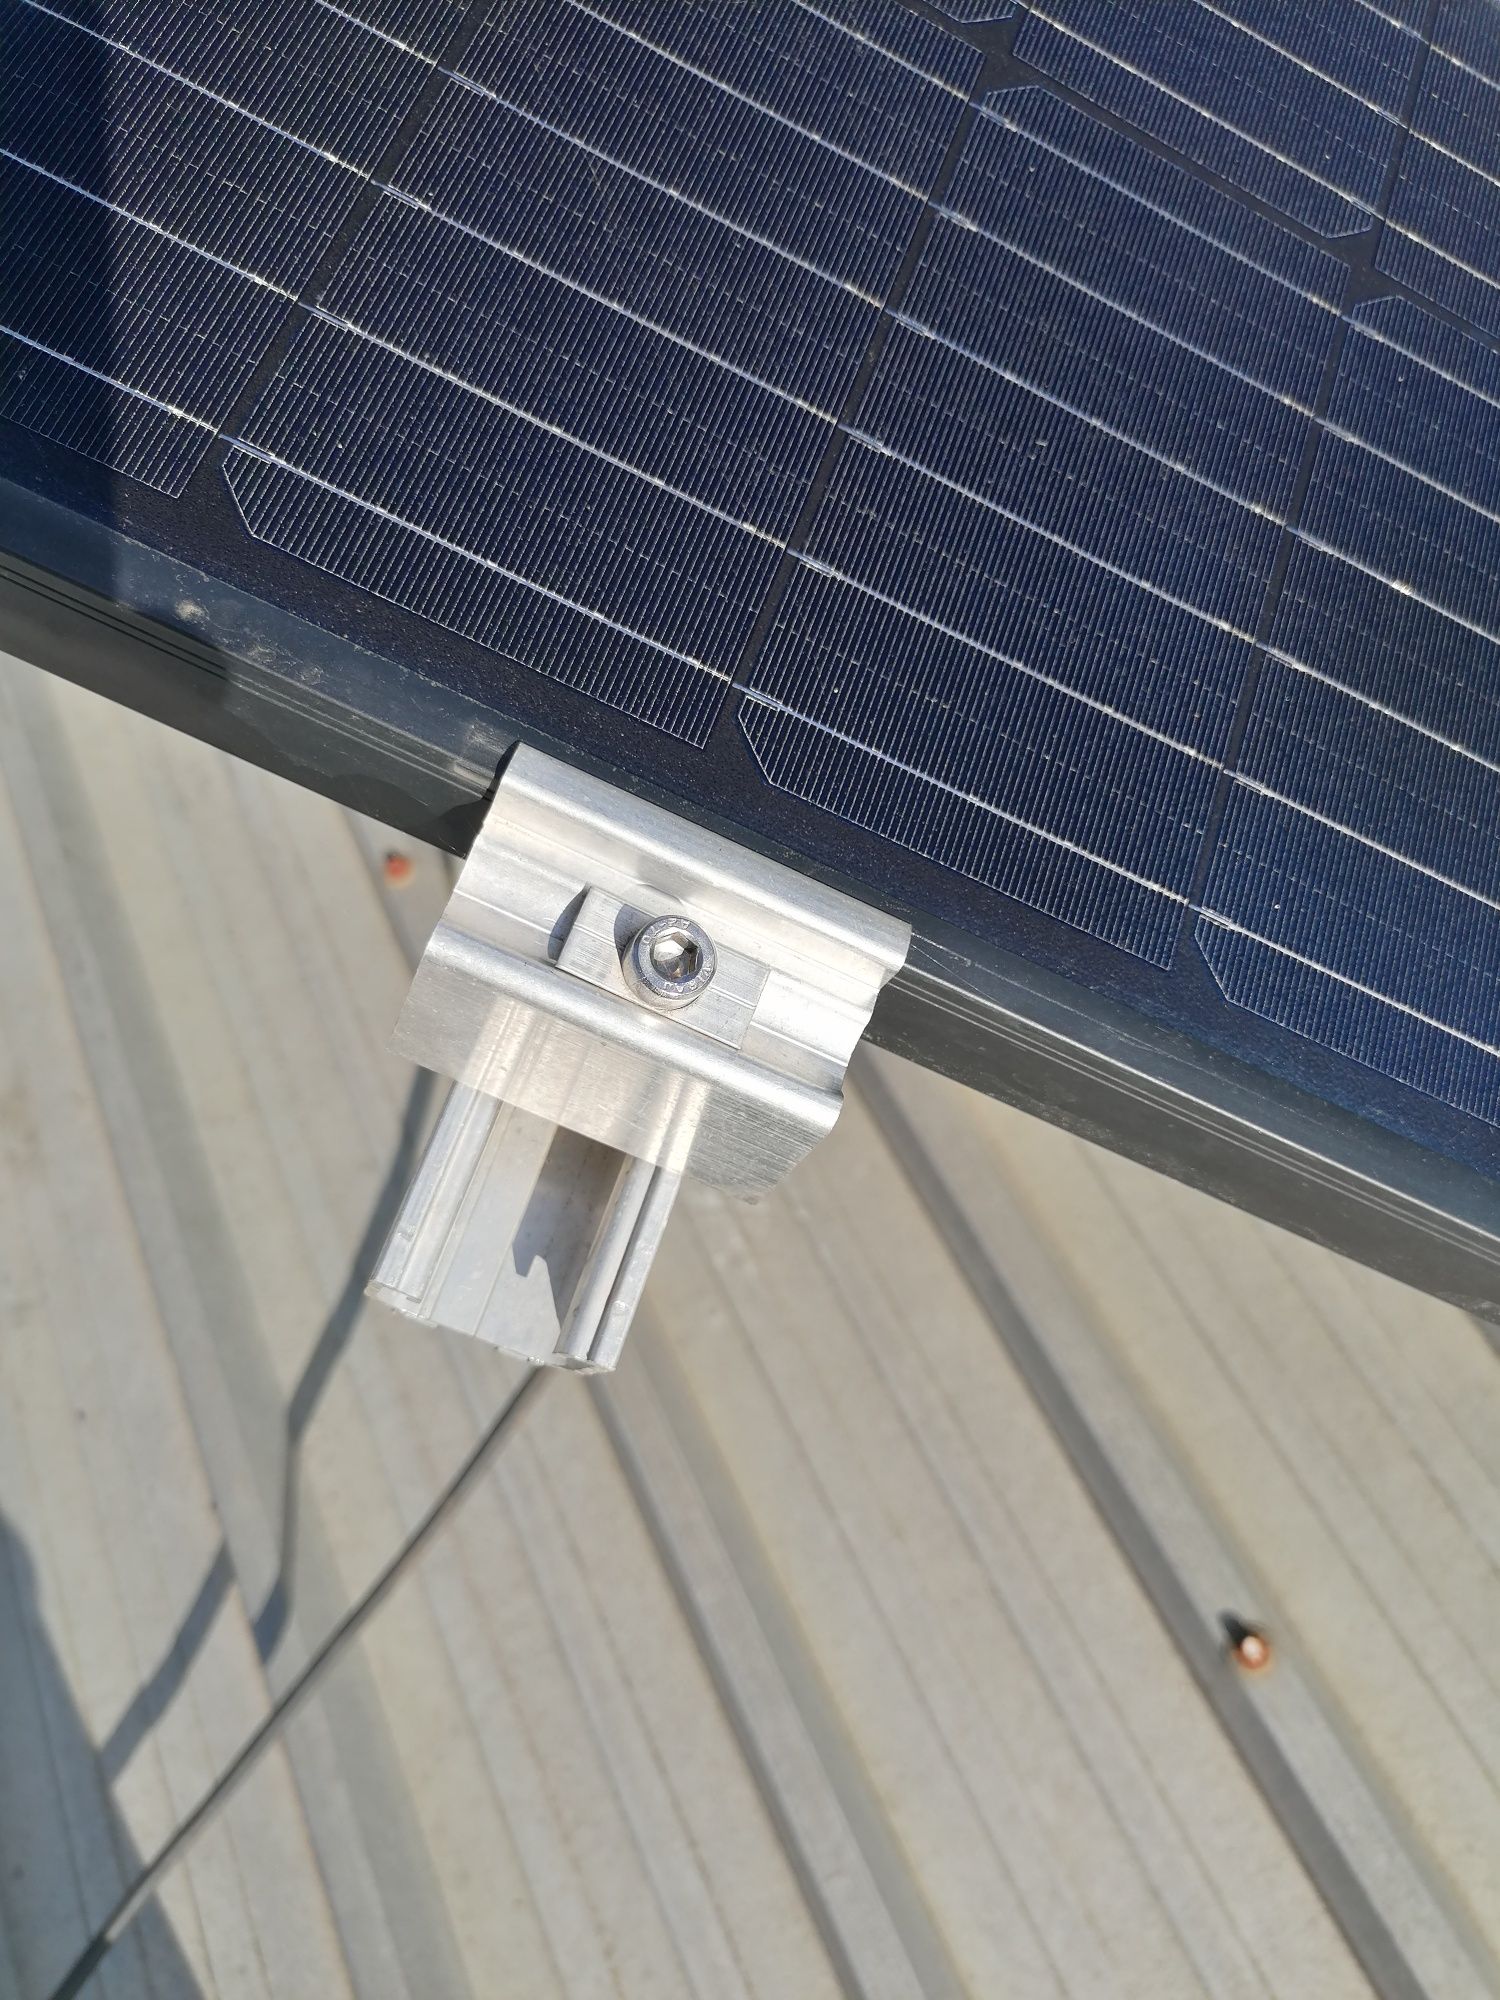 Kit Suporte Chão para 2 Painéis Solares em Alumínio